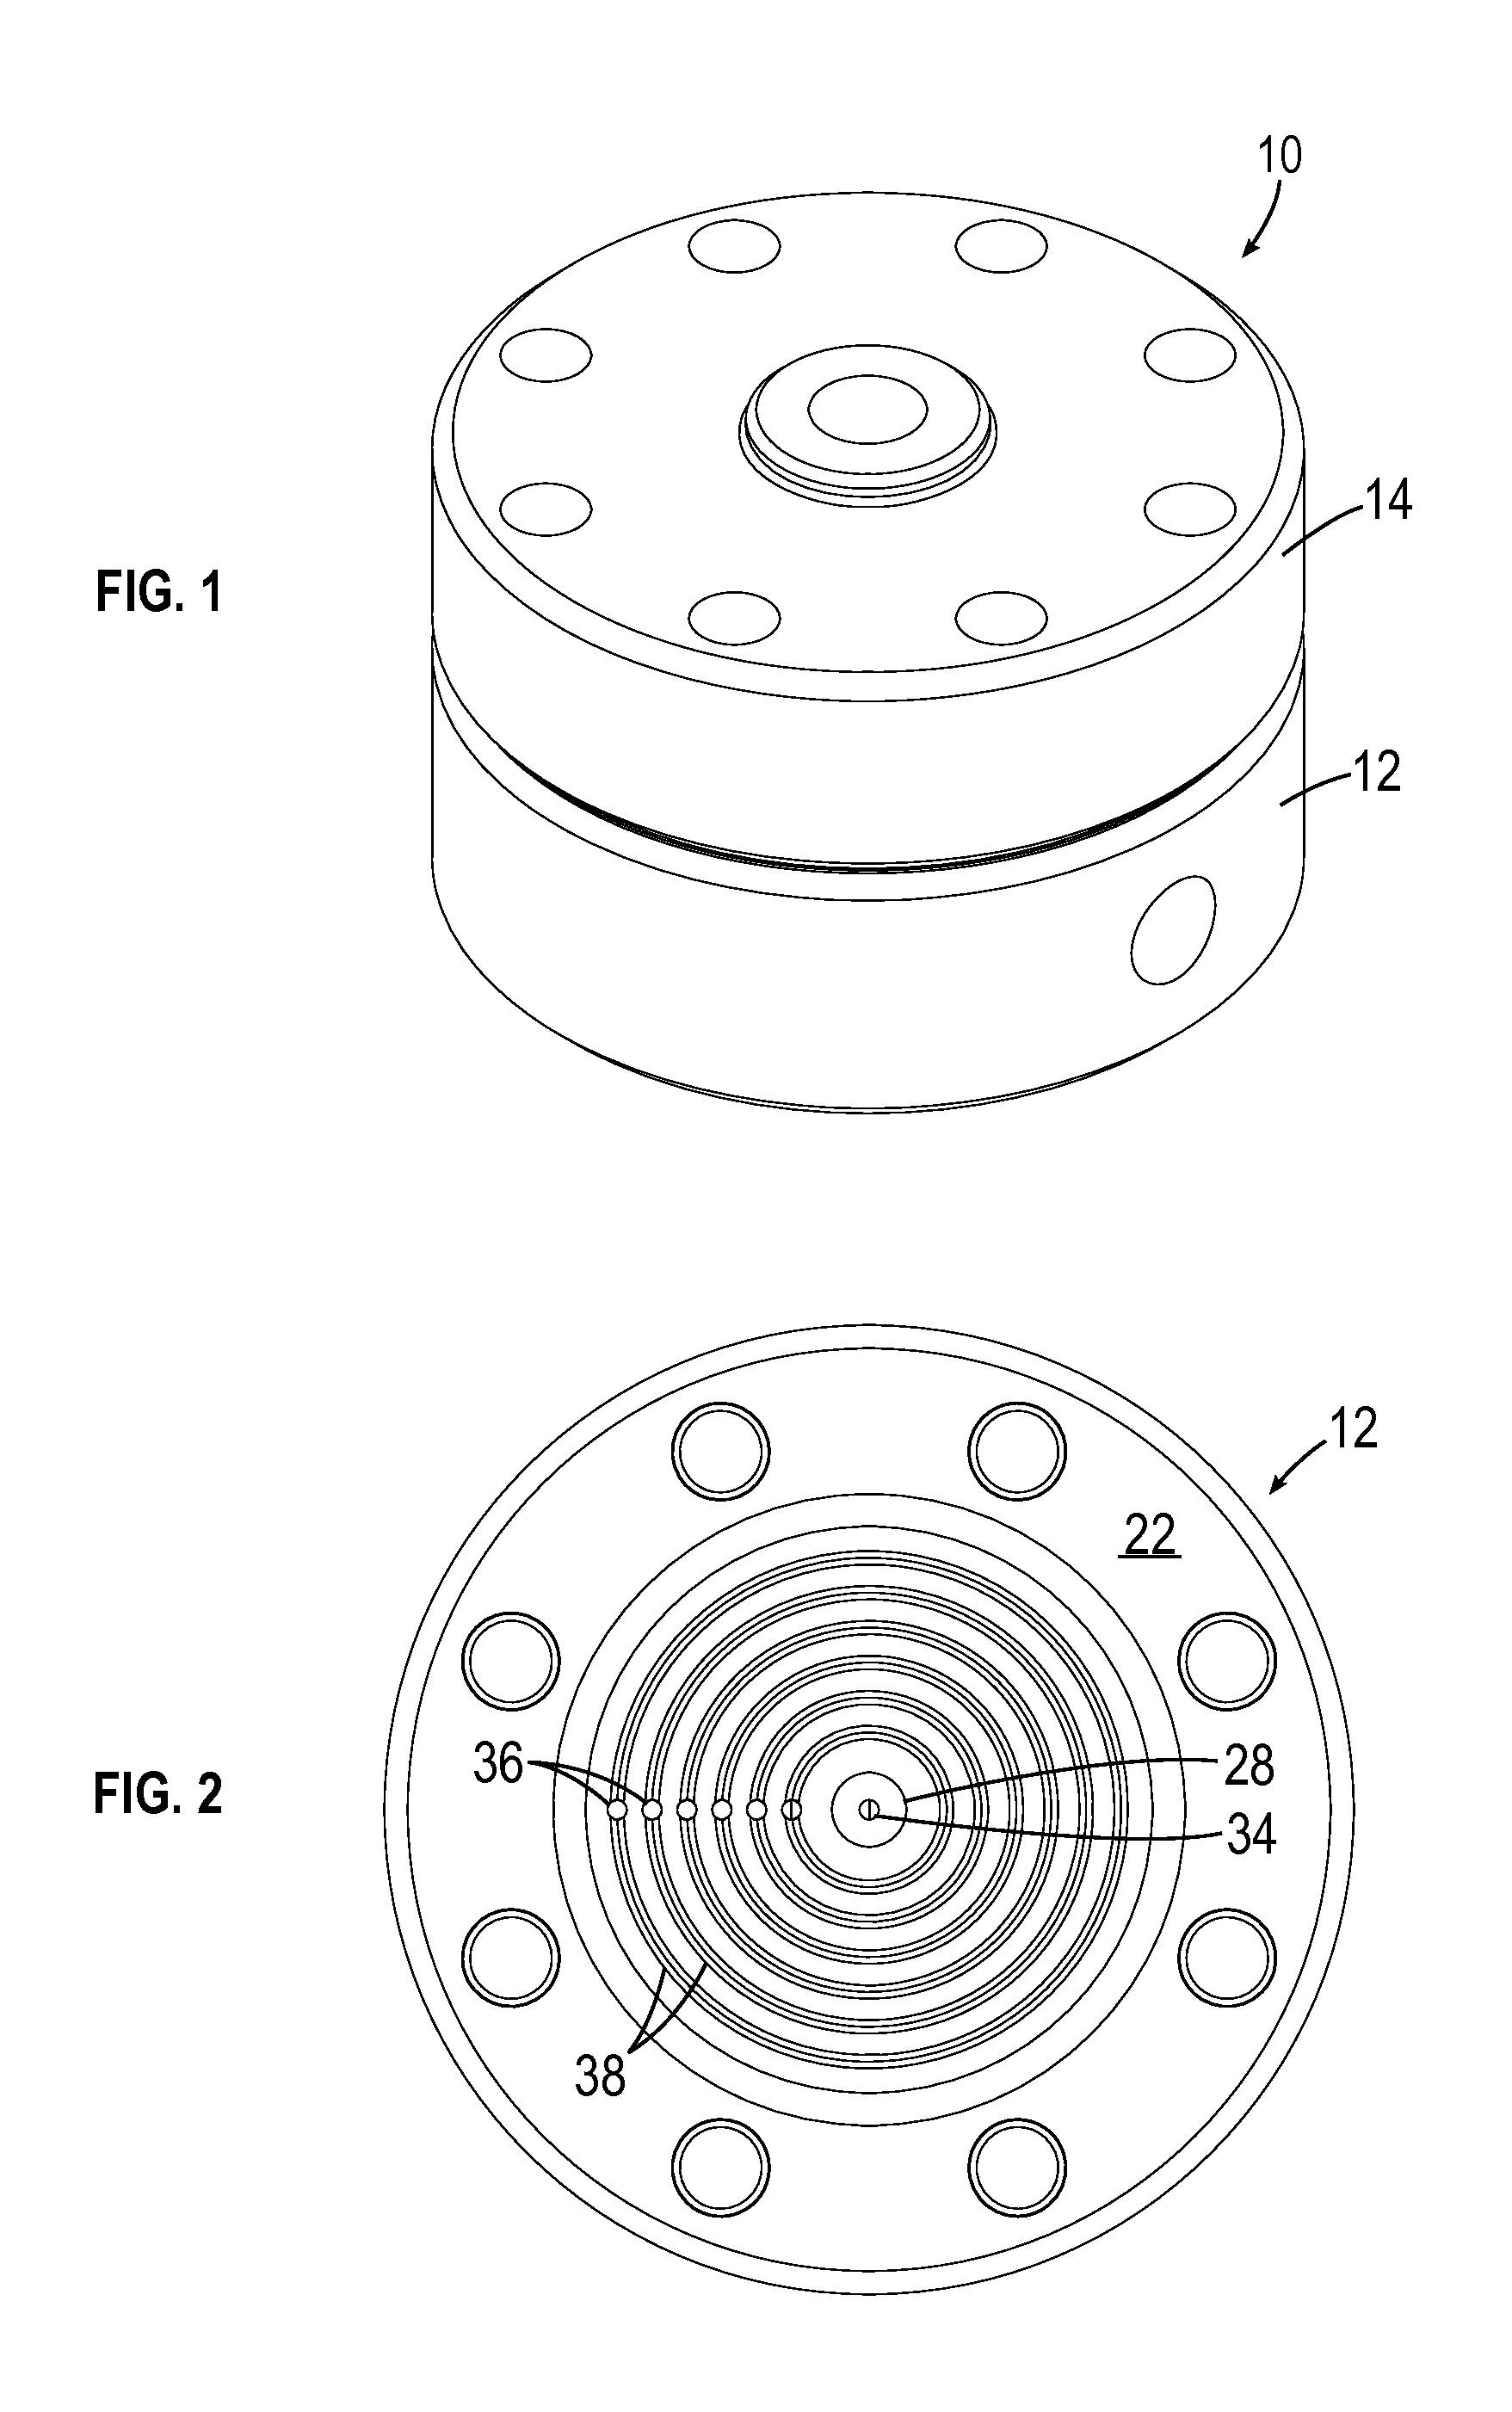 Back pressure regulator with floating seal support